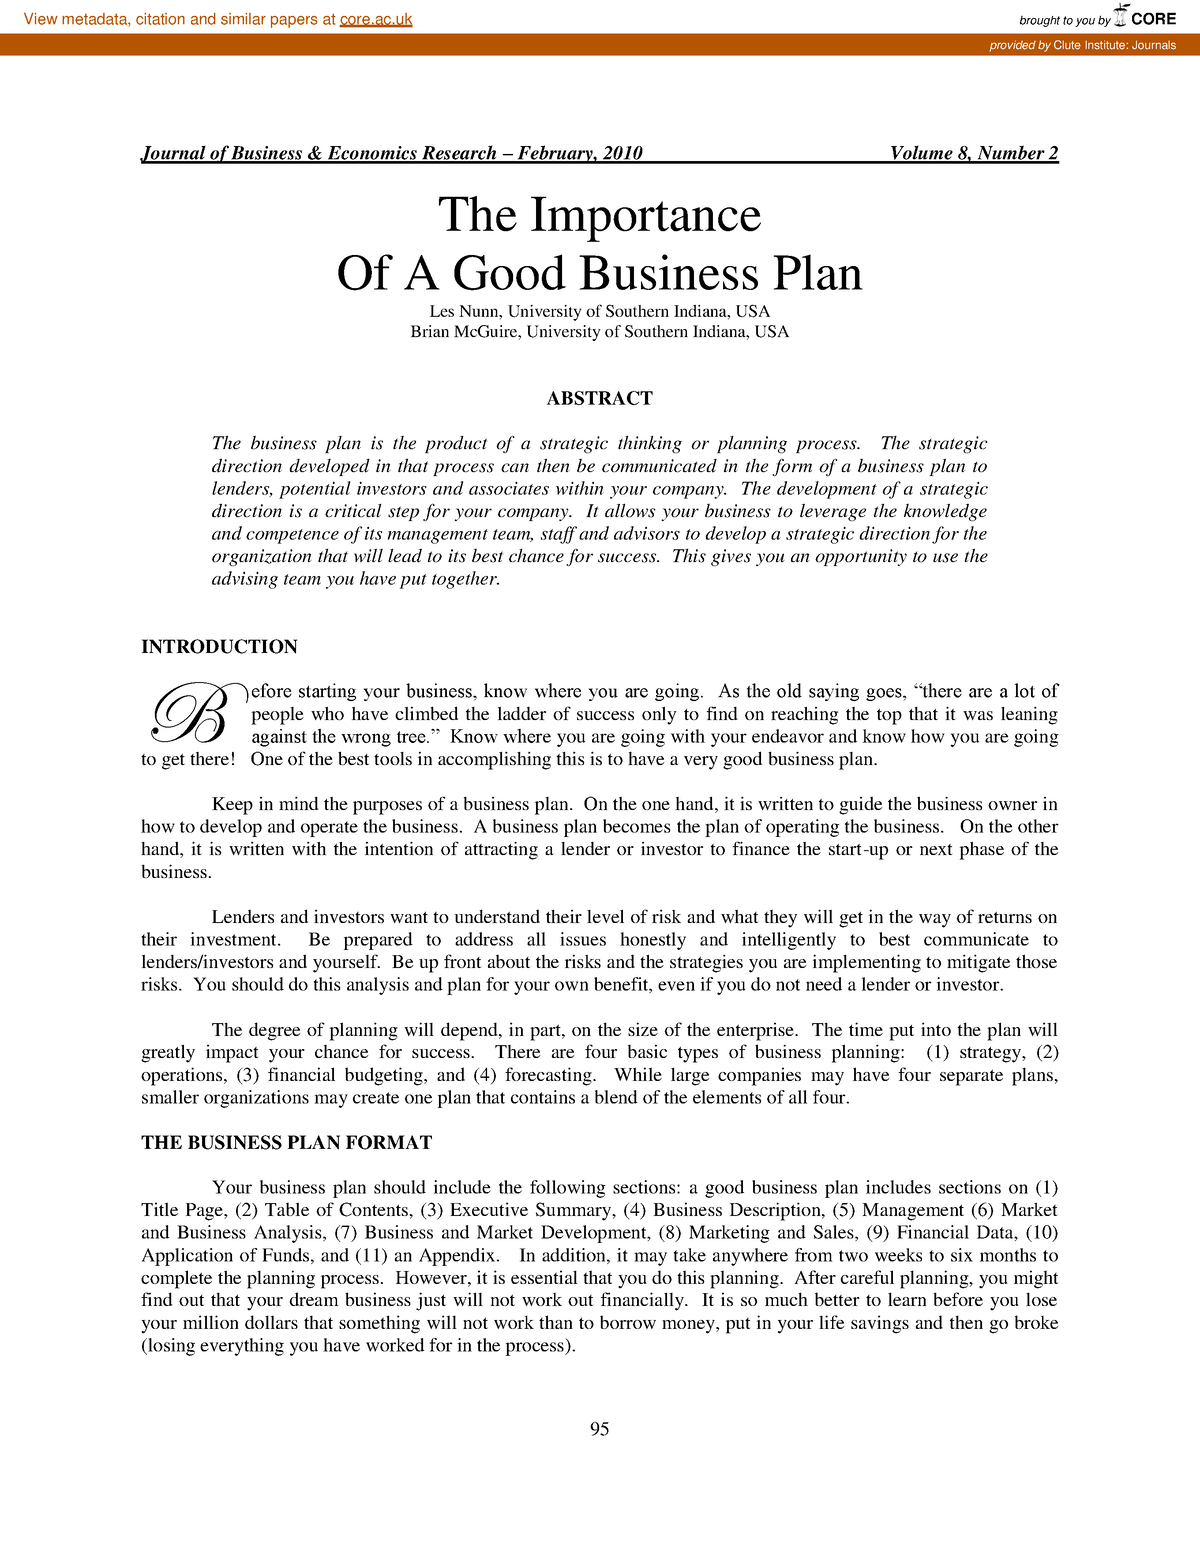 business plan journal articles